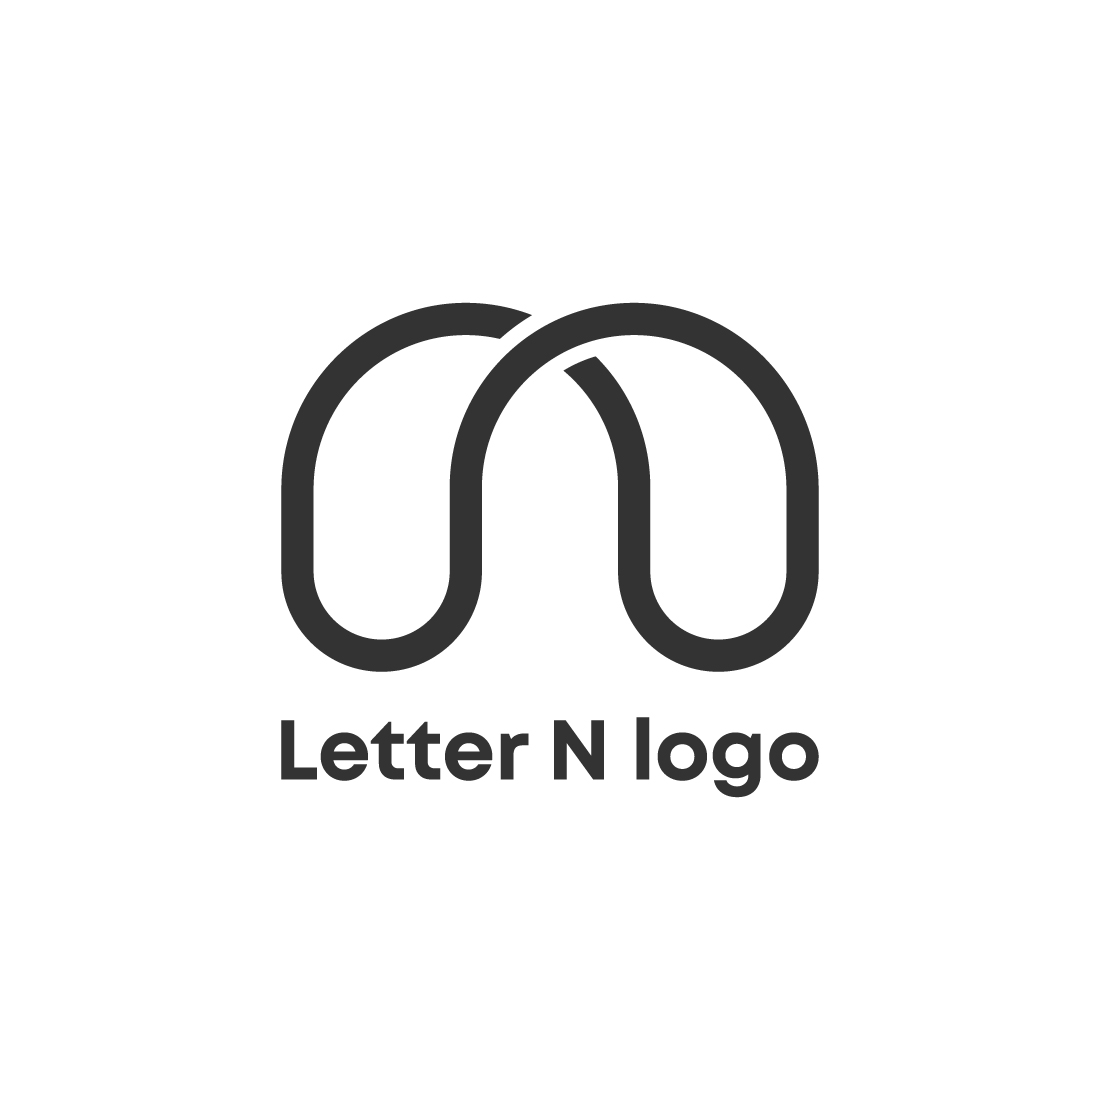 Letter N logo design cover image.